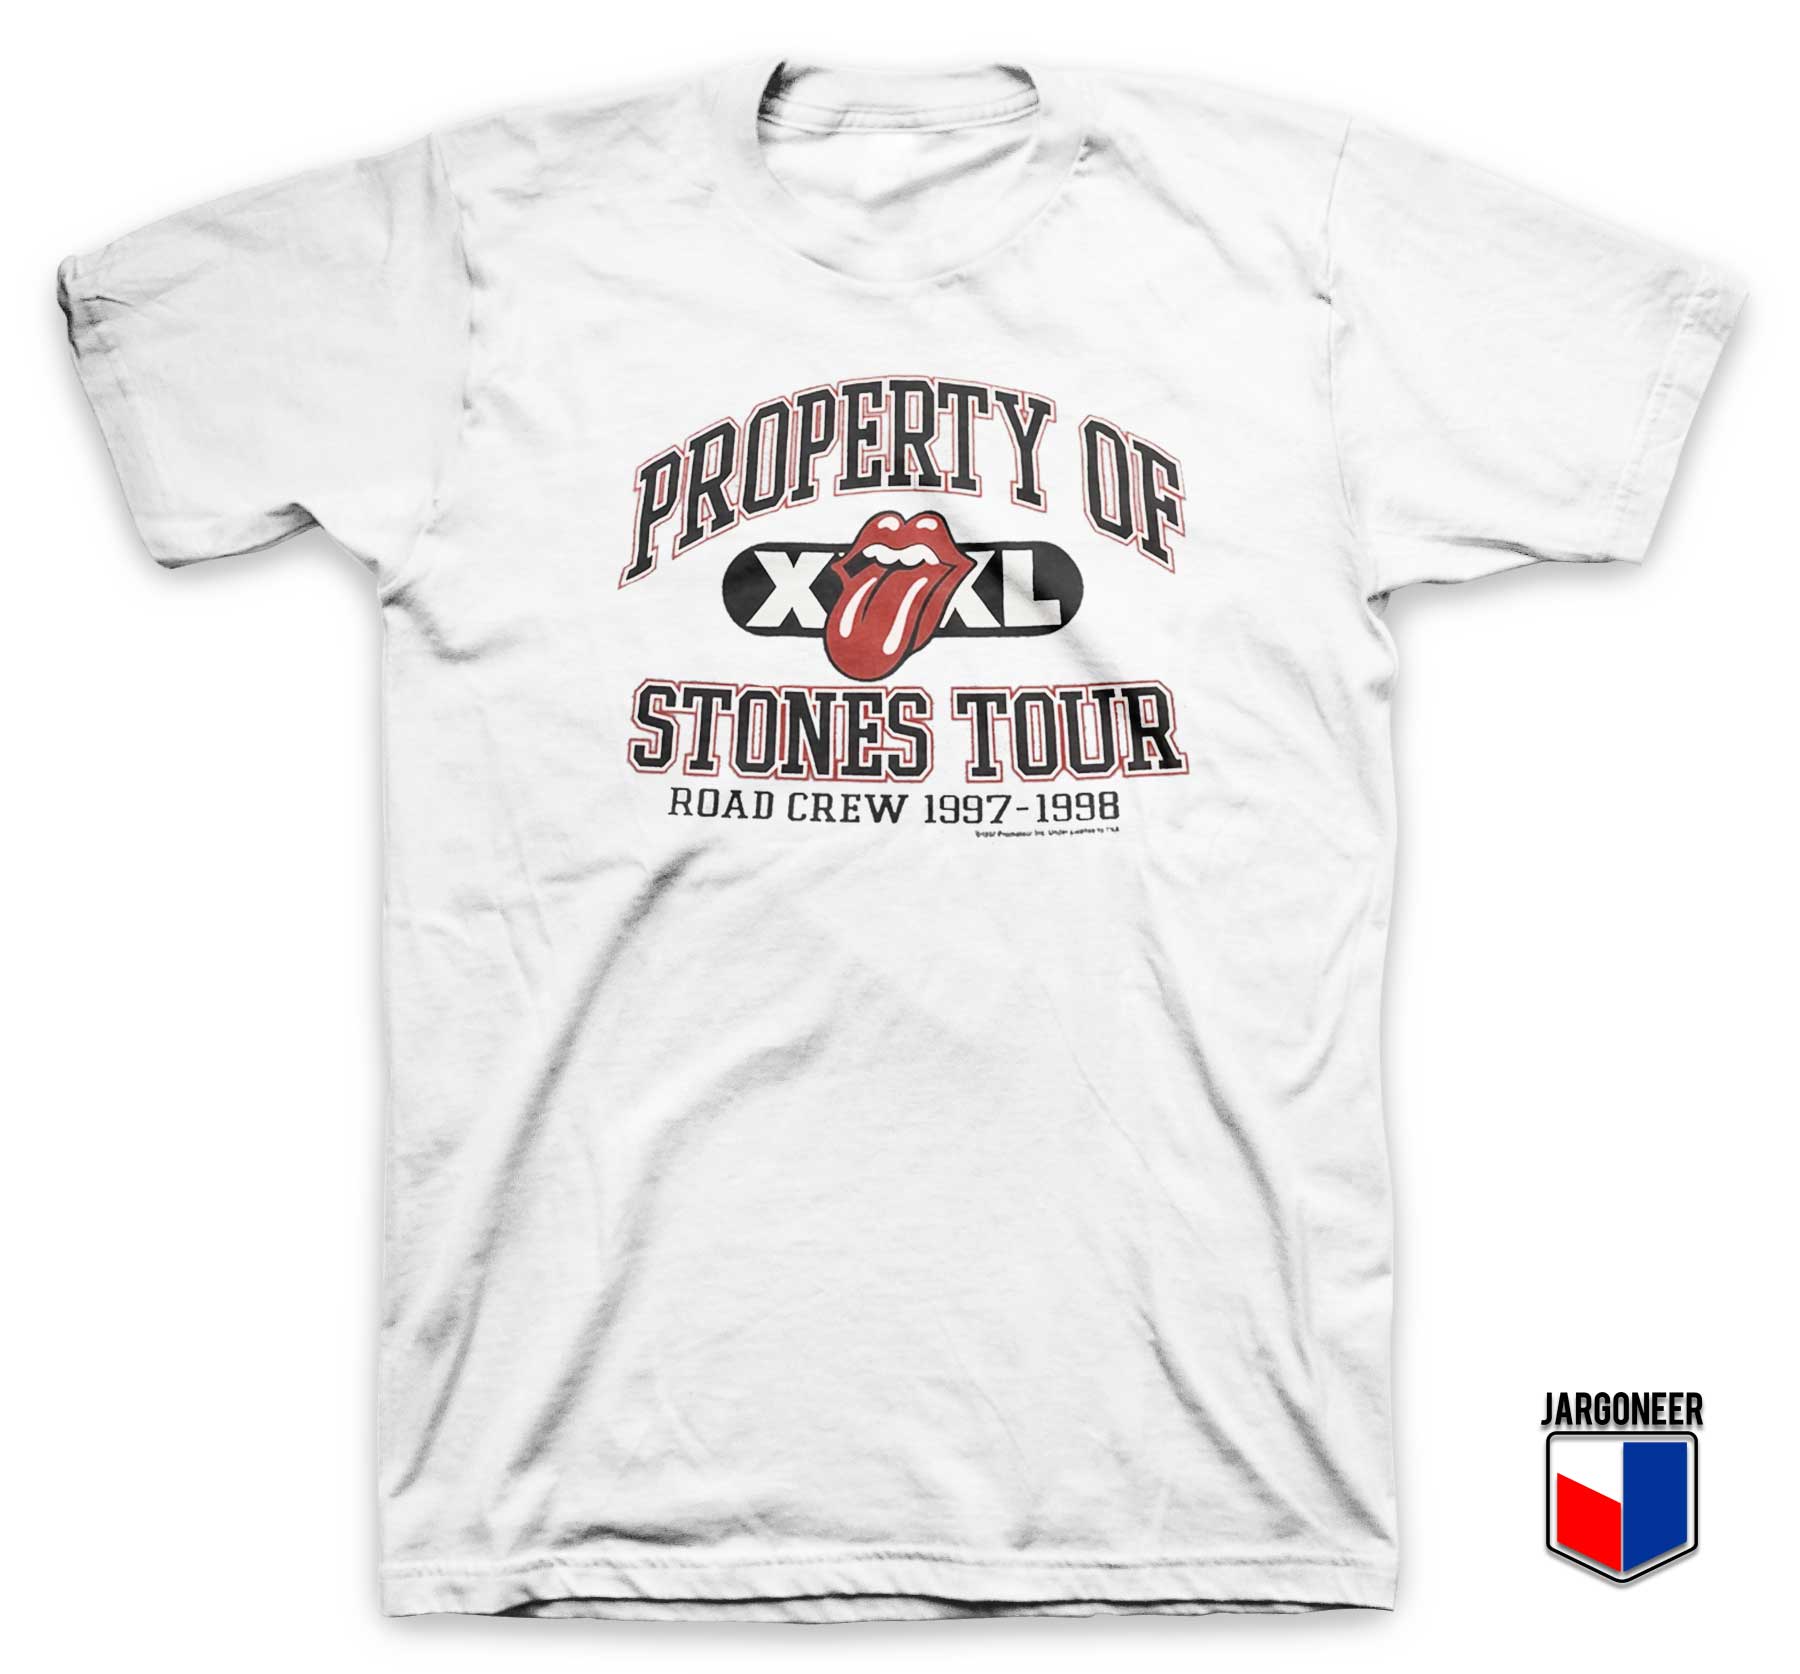 Property of Rolling Stones Tour T Shirt - Shop Unique Graphic Cool Shirt Designs